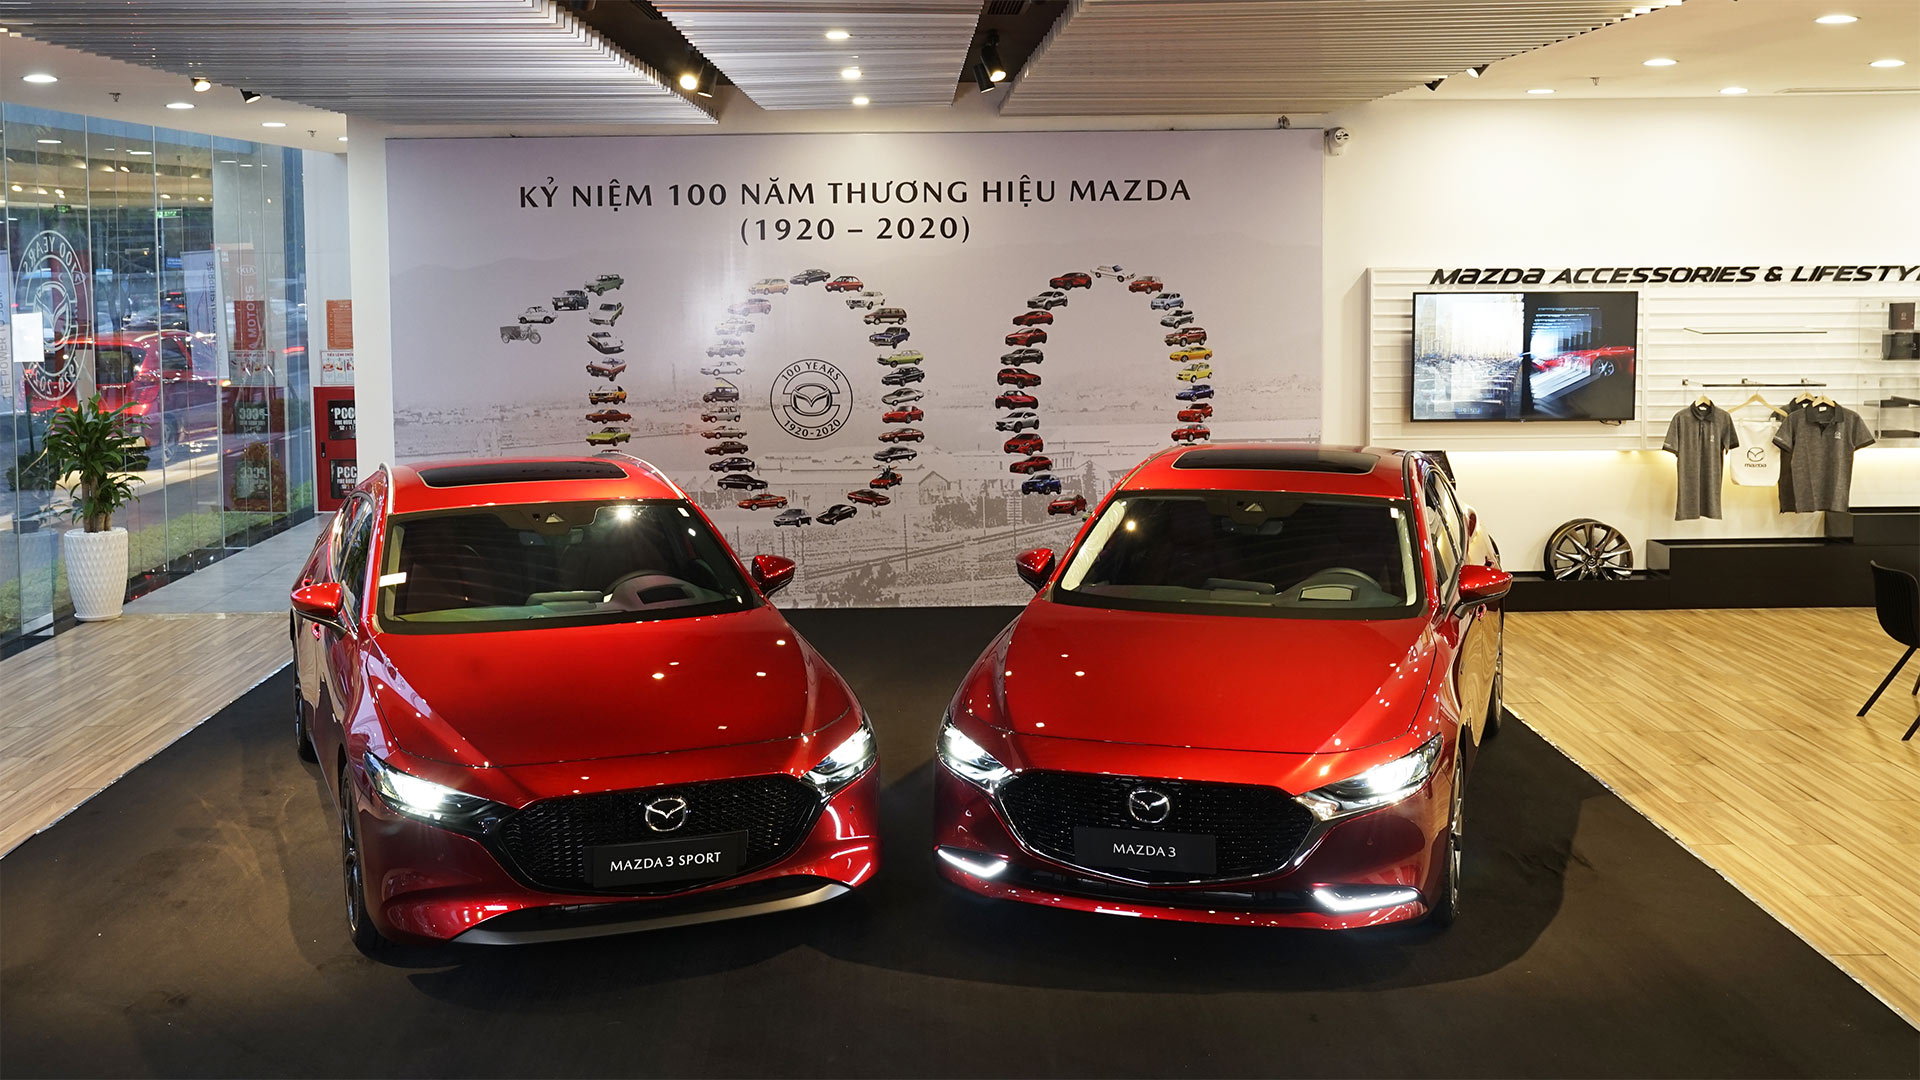 Chào đón All-New Mazda3 & Mazda3 Sport đặc biệt kỷ niệm 100 năm 100-nam-mazda-08.jpg